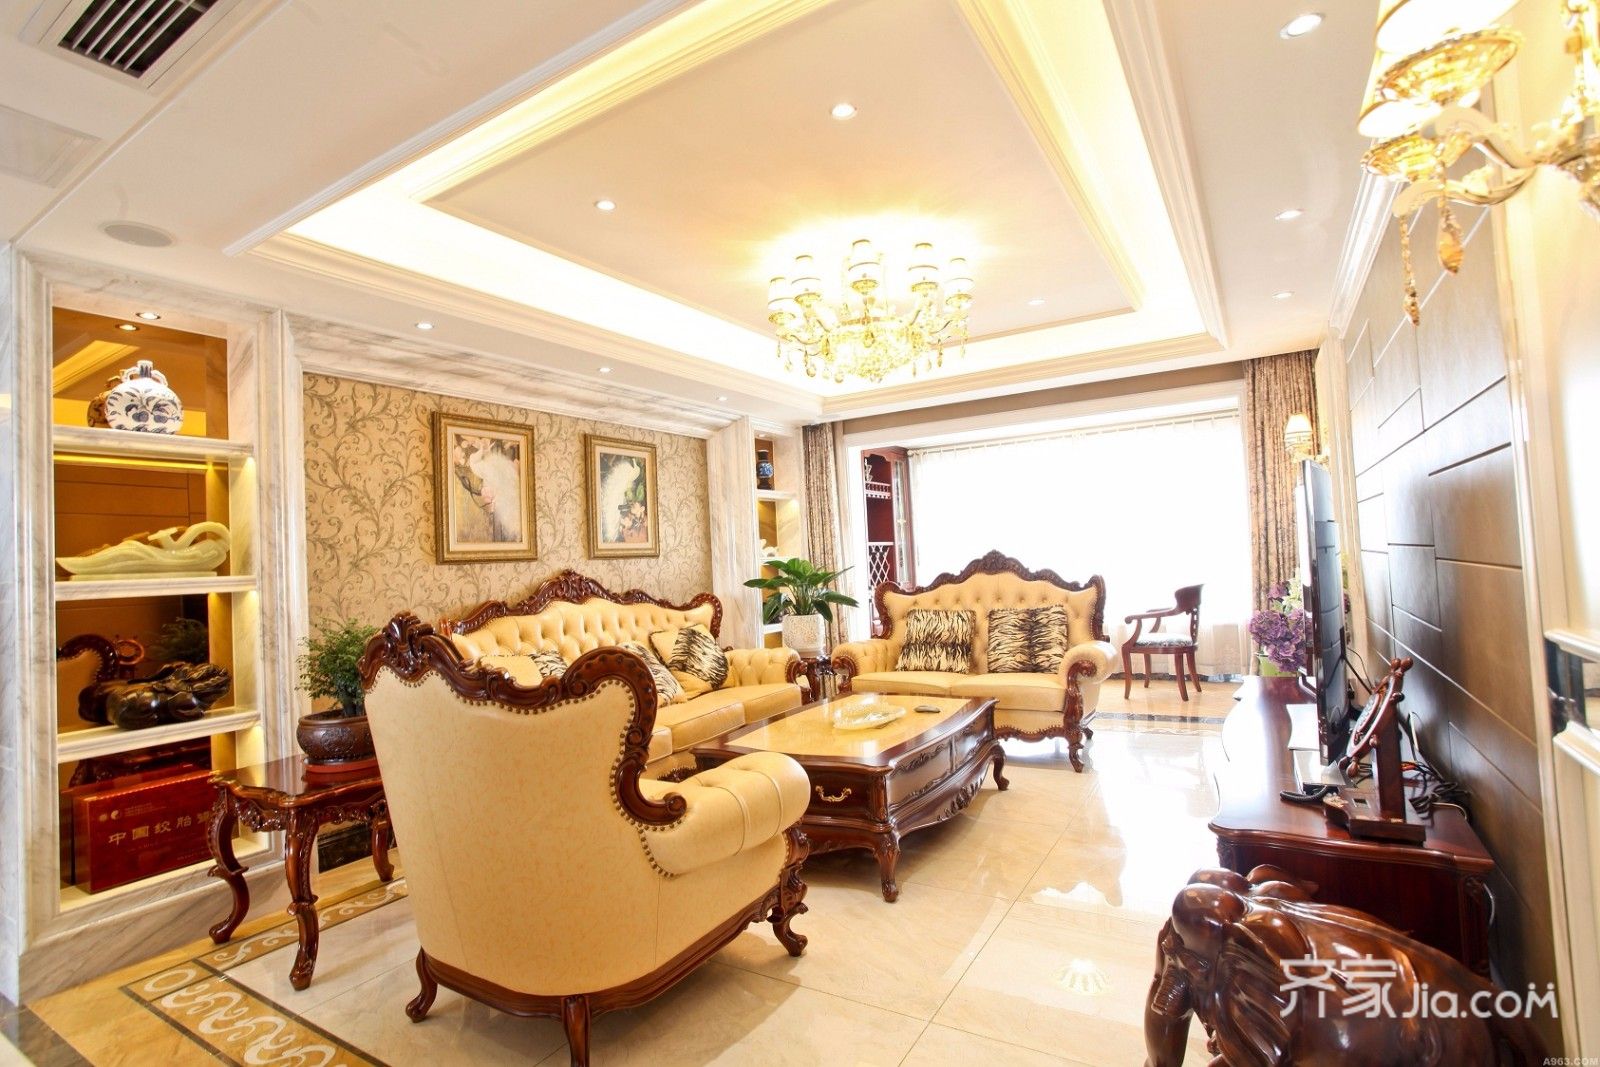 10-15万装修,三居室装修,120平米装修,欧式风格,客厅,沙发,沙发背景墙